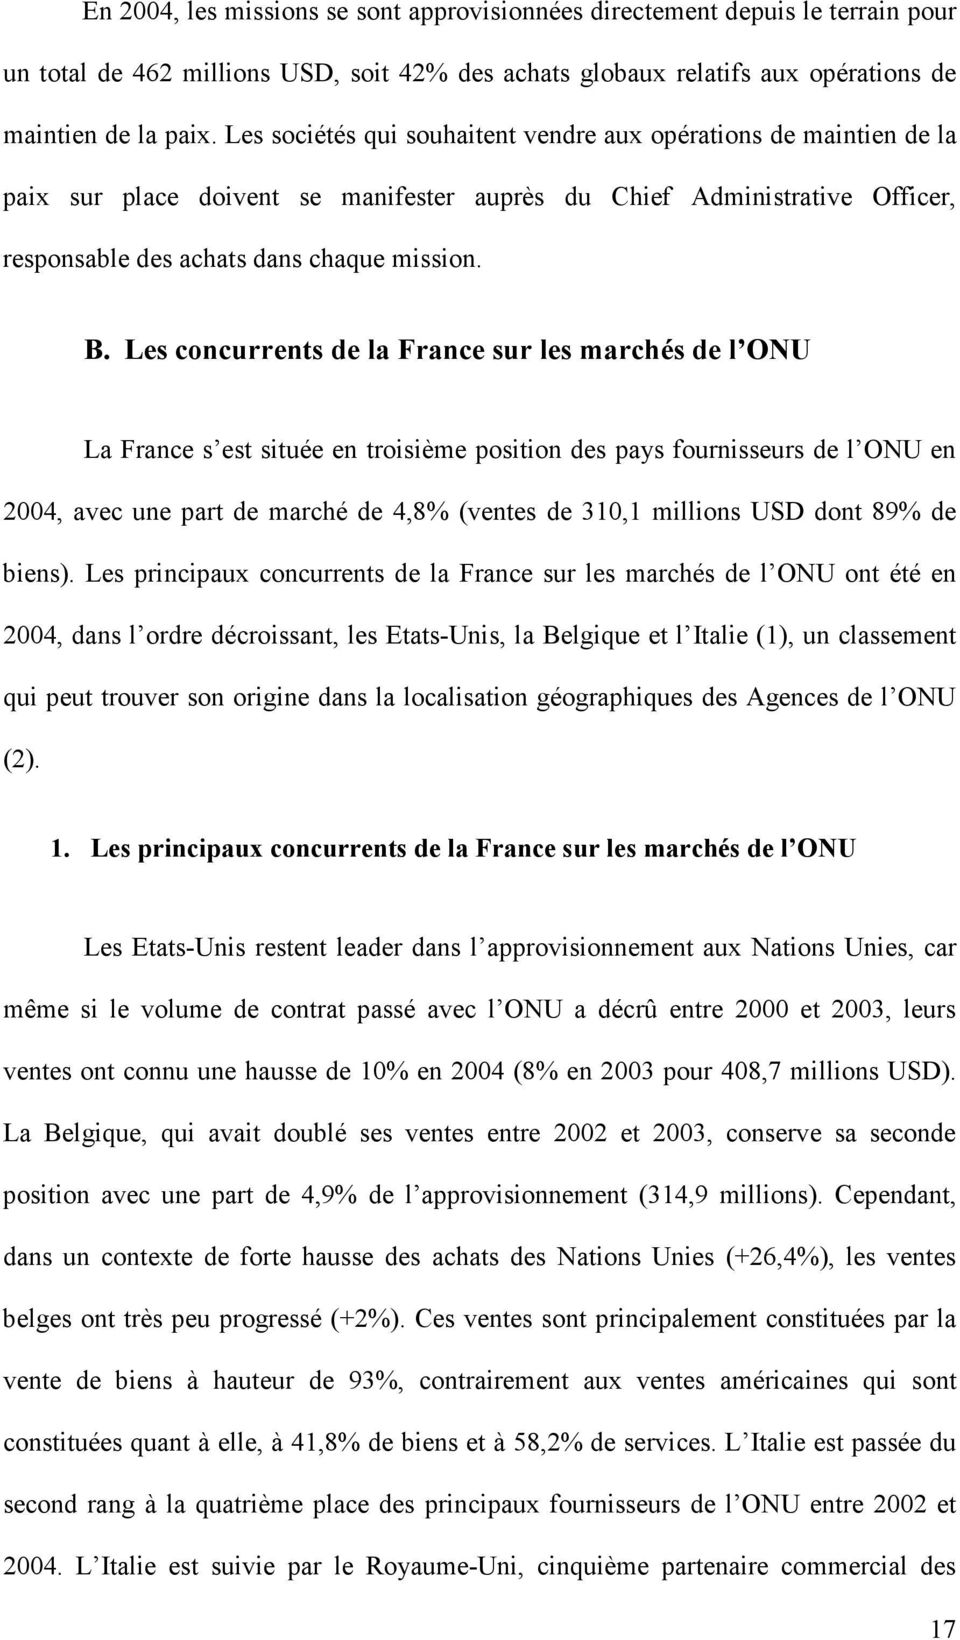 Les concurrents de la France sur les marchés de l ONU La France s est située en troisième position des pays fournisseurs de l ONU en 2004, avec une part de marché de 4,8% (ventes de 310,1 millions